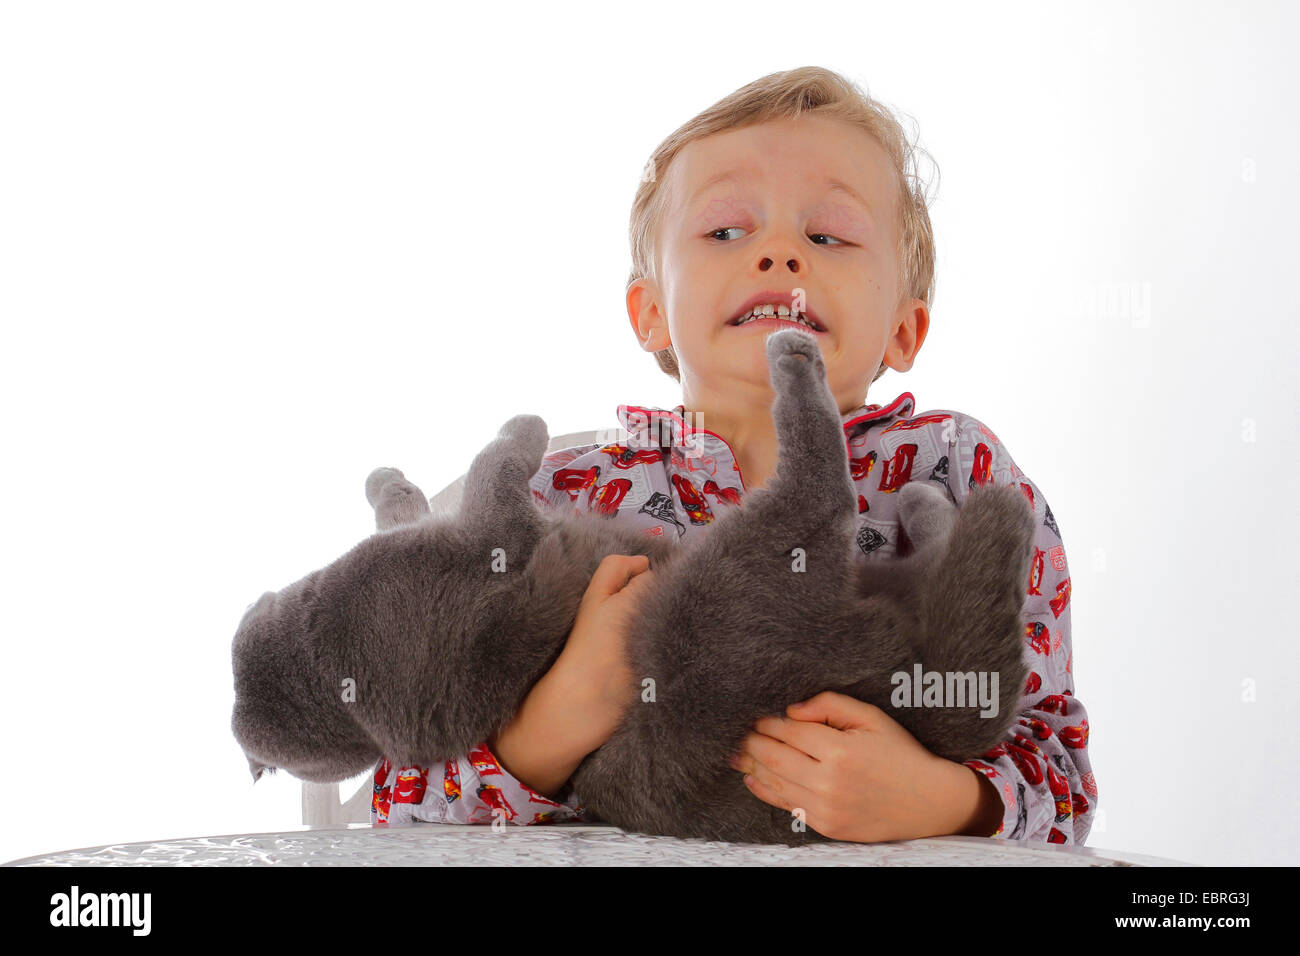 Hauskatze, Hauskatze (Felis Silvestris F. Catus), kleiner Junge im Pyjama Arm skeptisch eine Katze festhalten Stockfoto